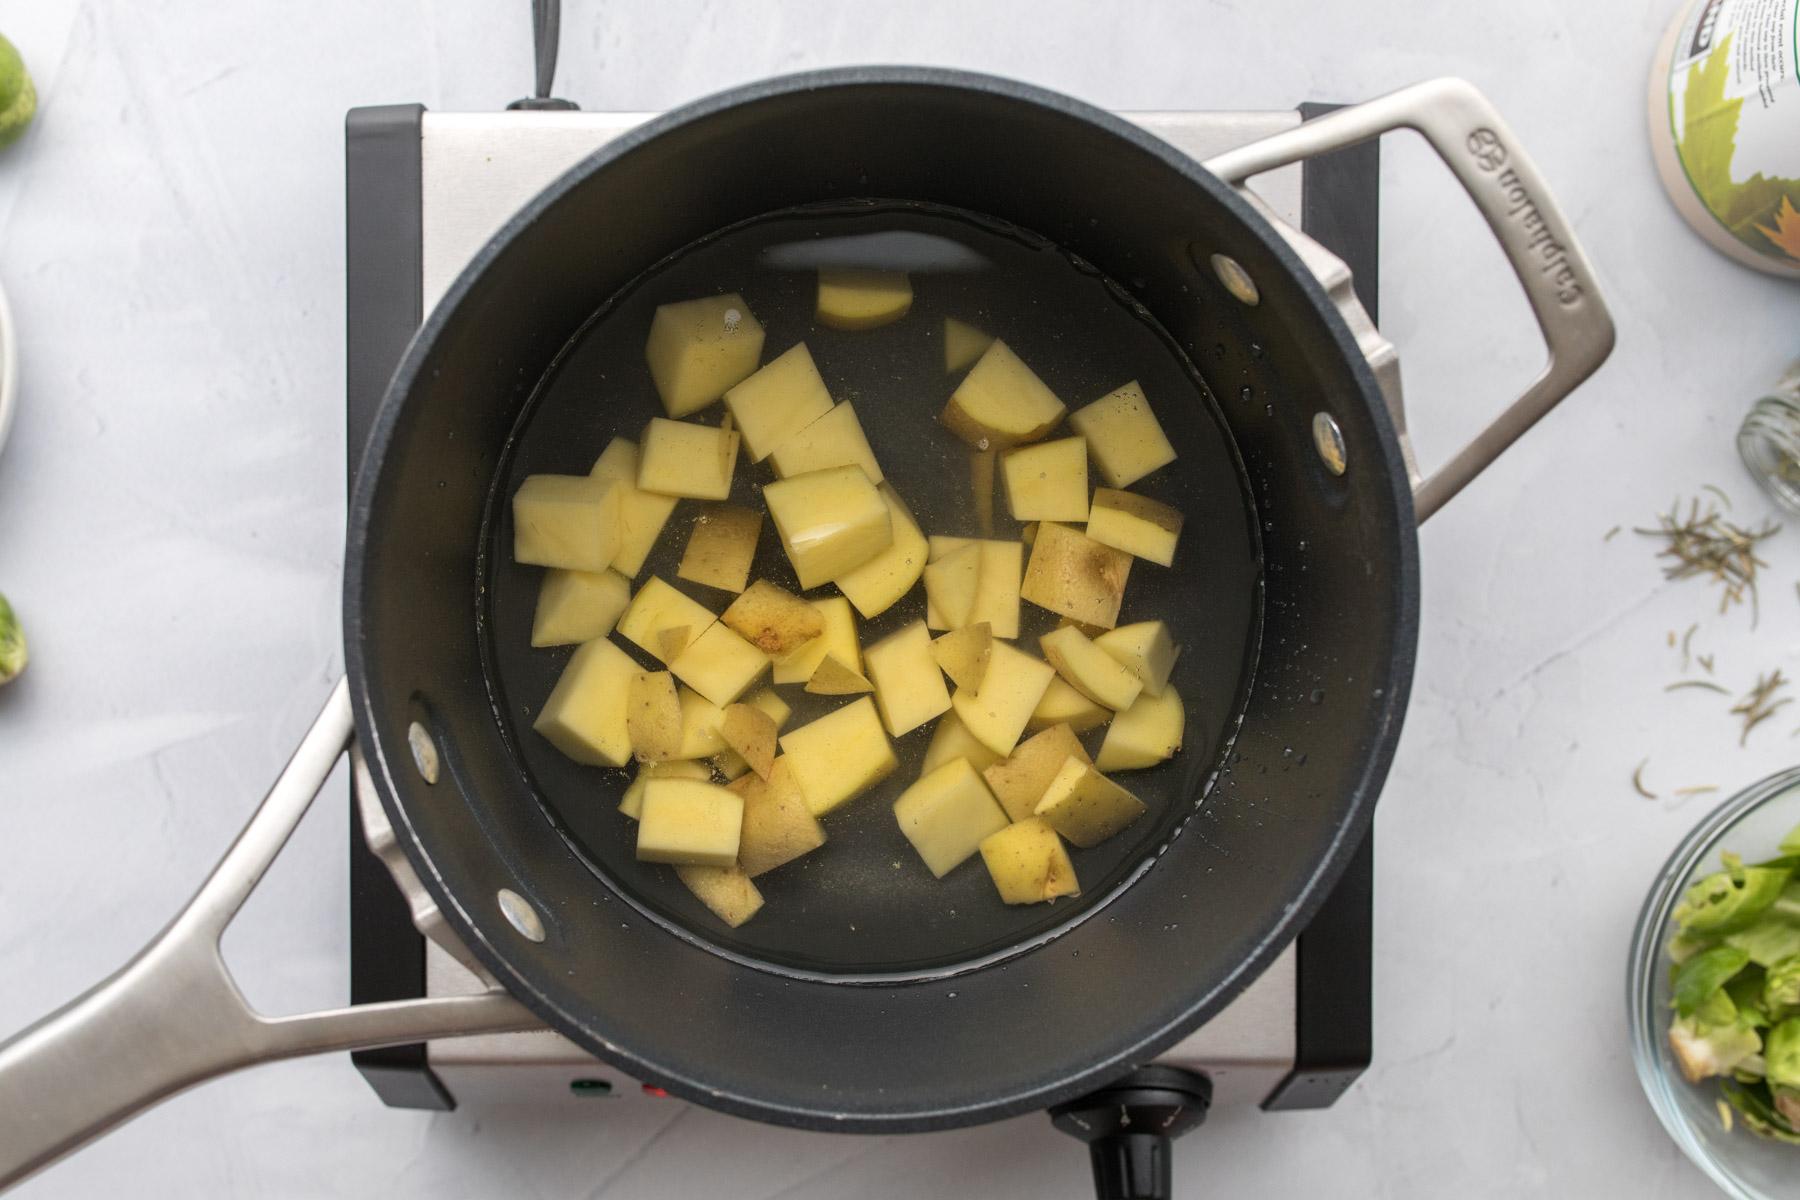 cubed potatoes in a pot